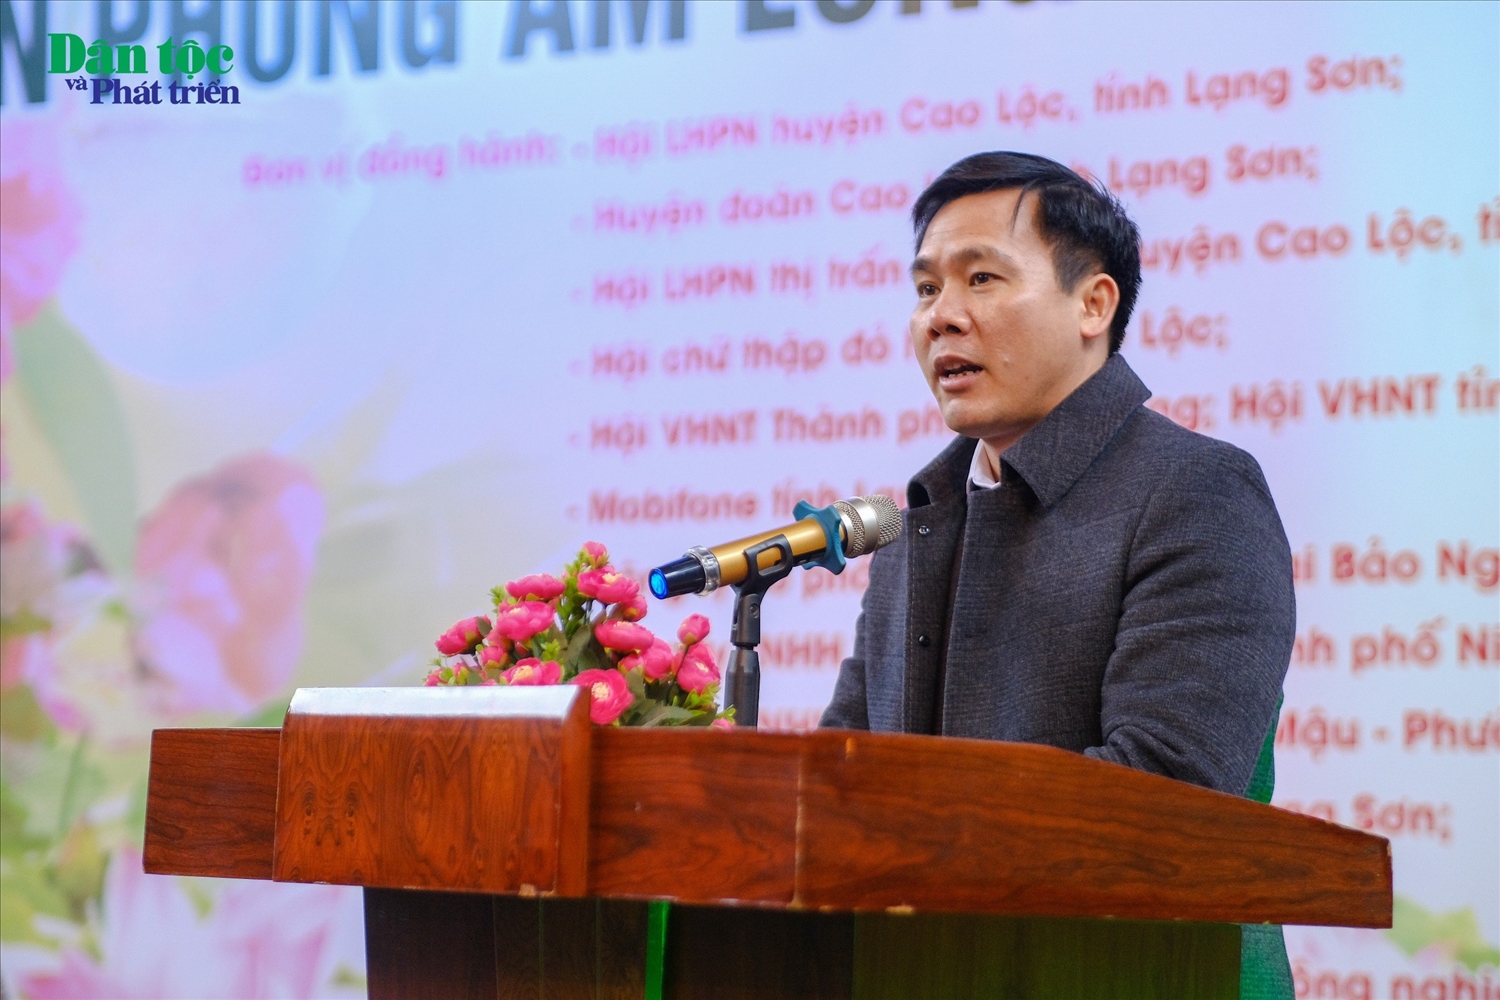 Phó Chủ tịch UBND huyện Cao Lộc Nguyễn Văn Thịnh phát biểu tại chương trình